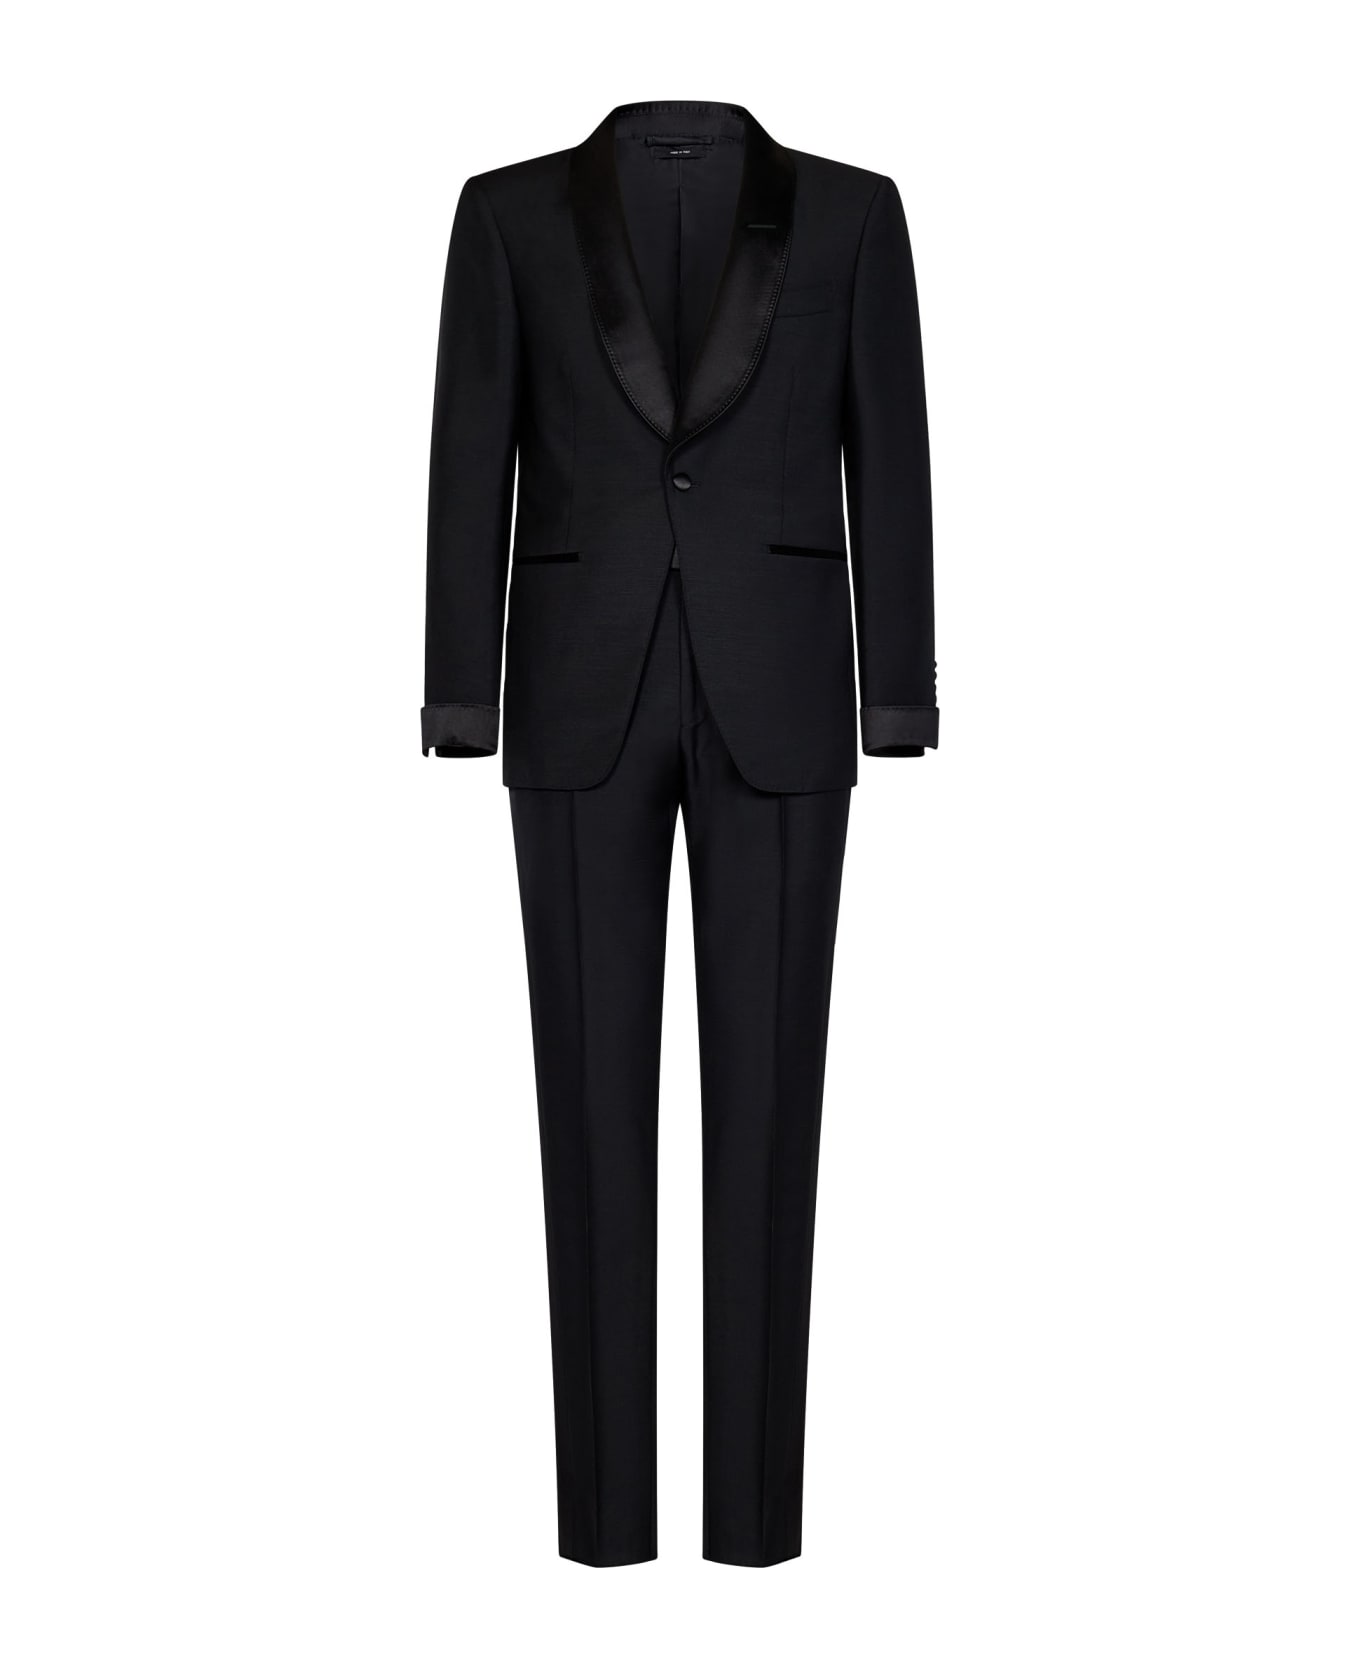 Tom Ford Atticus Suit - Black スーツ